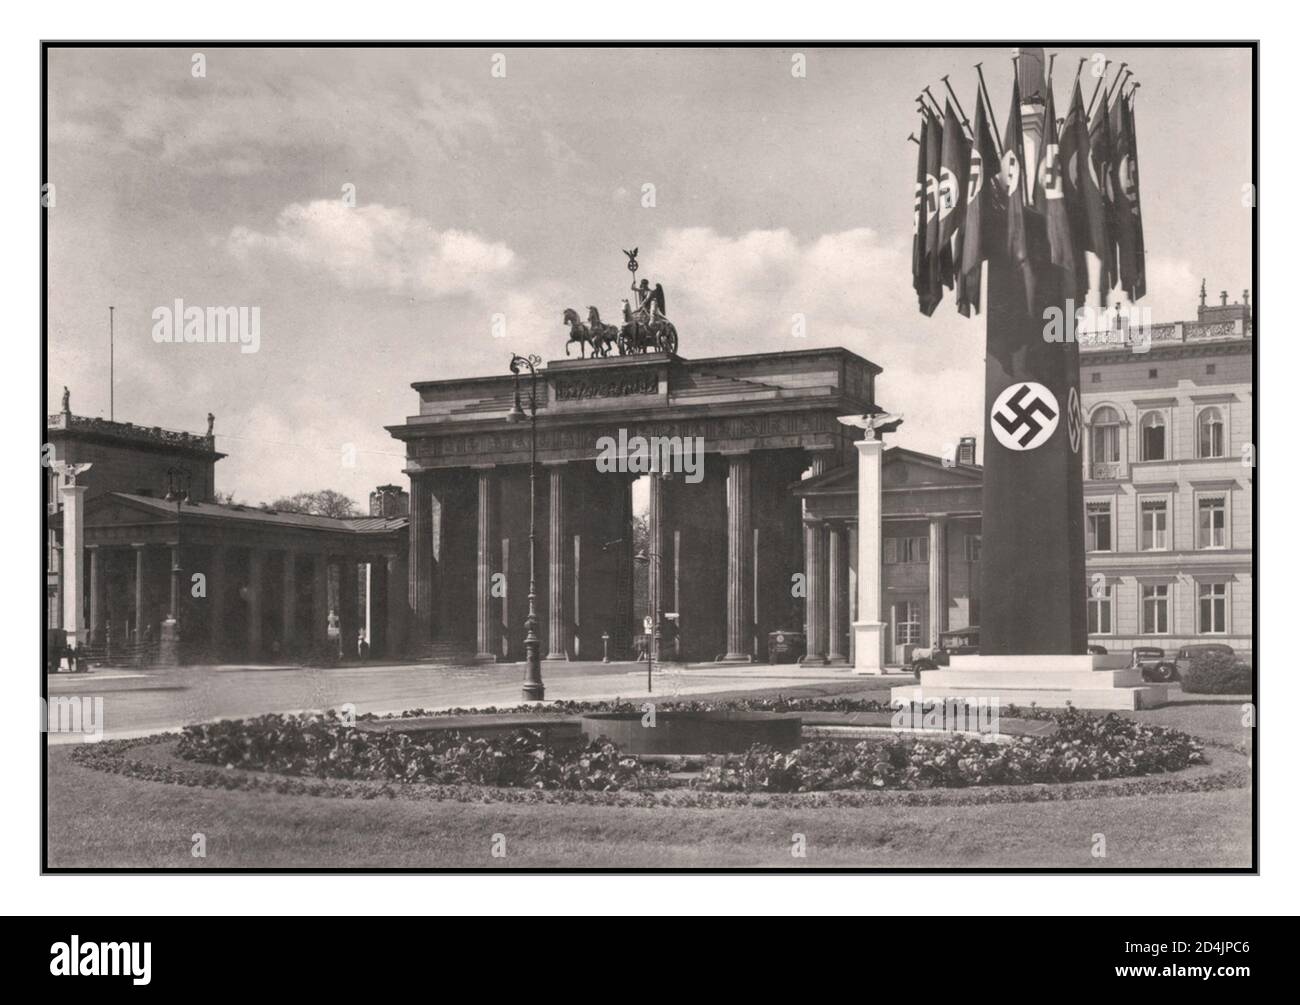 1930's Berlin Nazi Germany Brandenburg Gate, Pariser Platz with Nazi  Swastika Flags Berlin Germany 1930's Stock Photo - Alamy